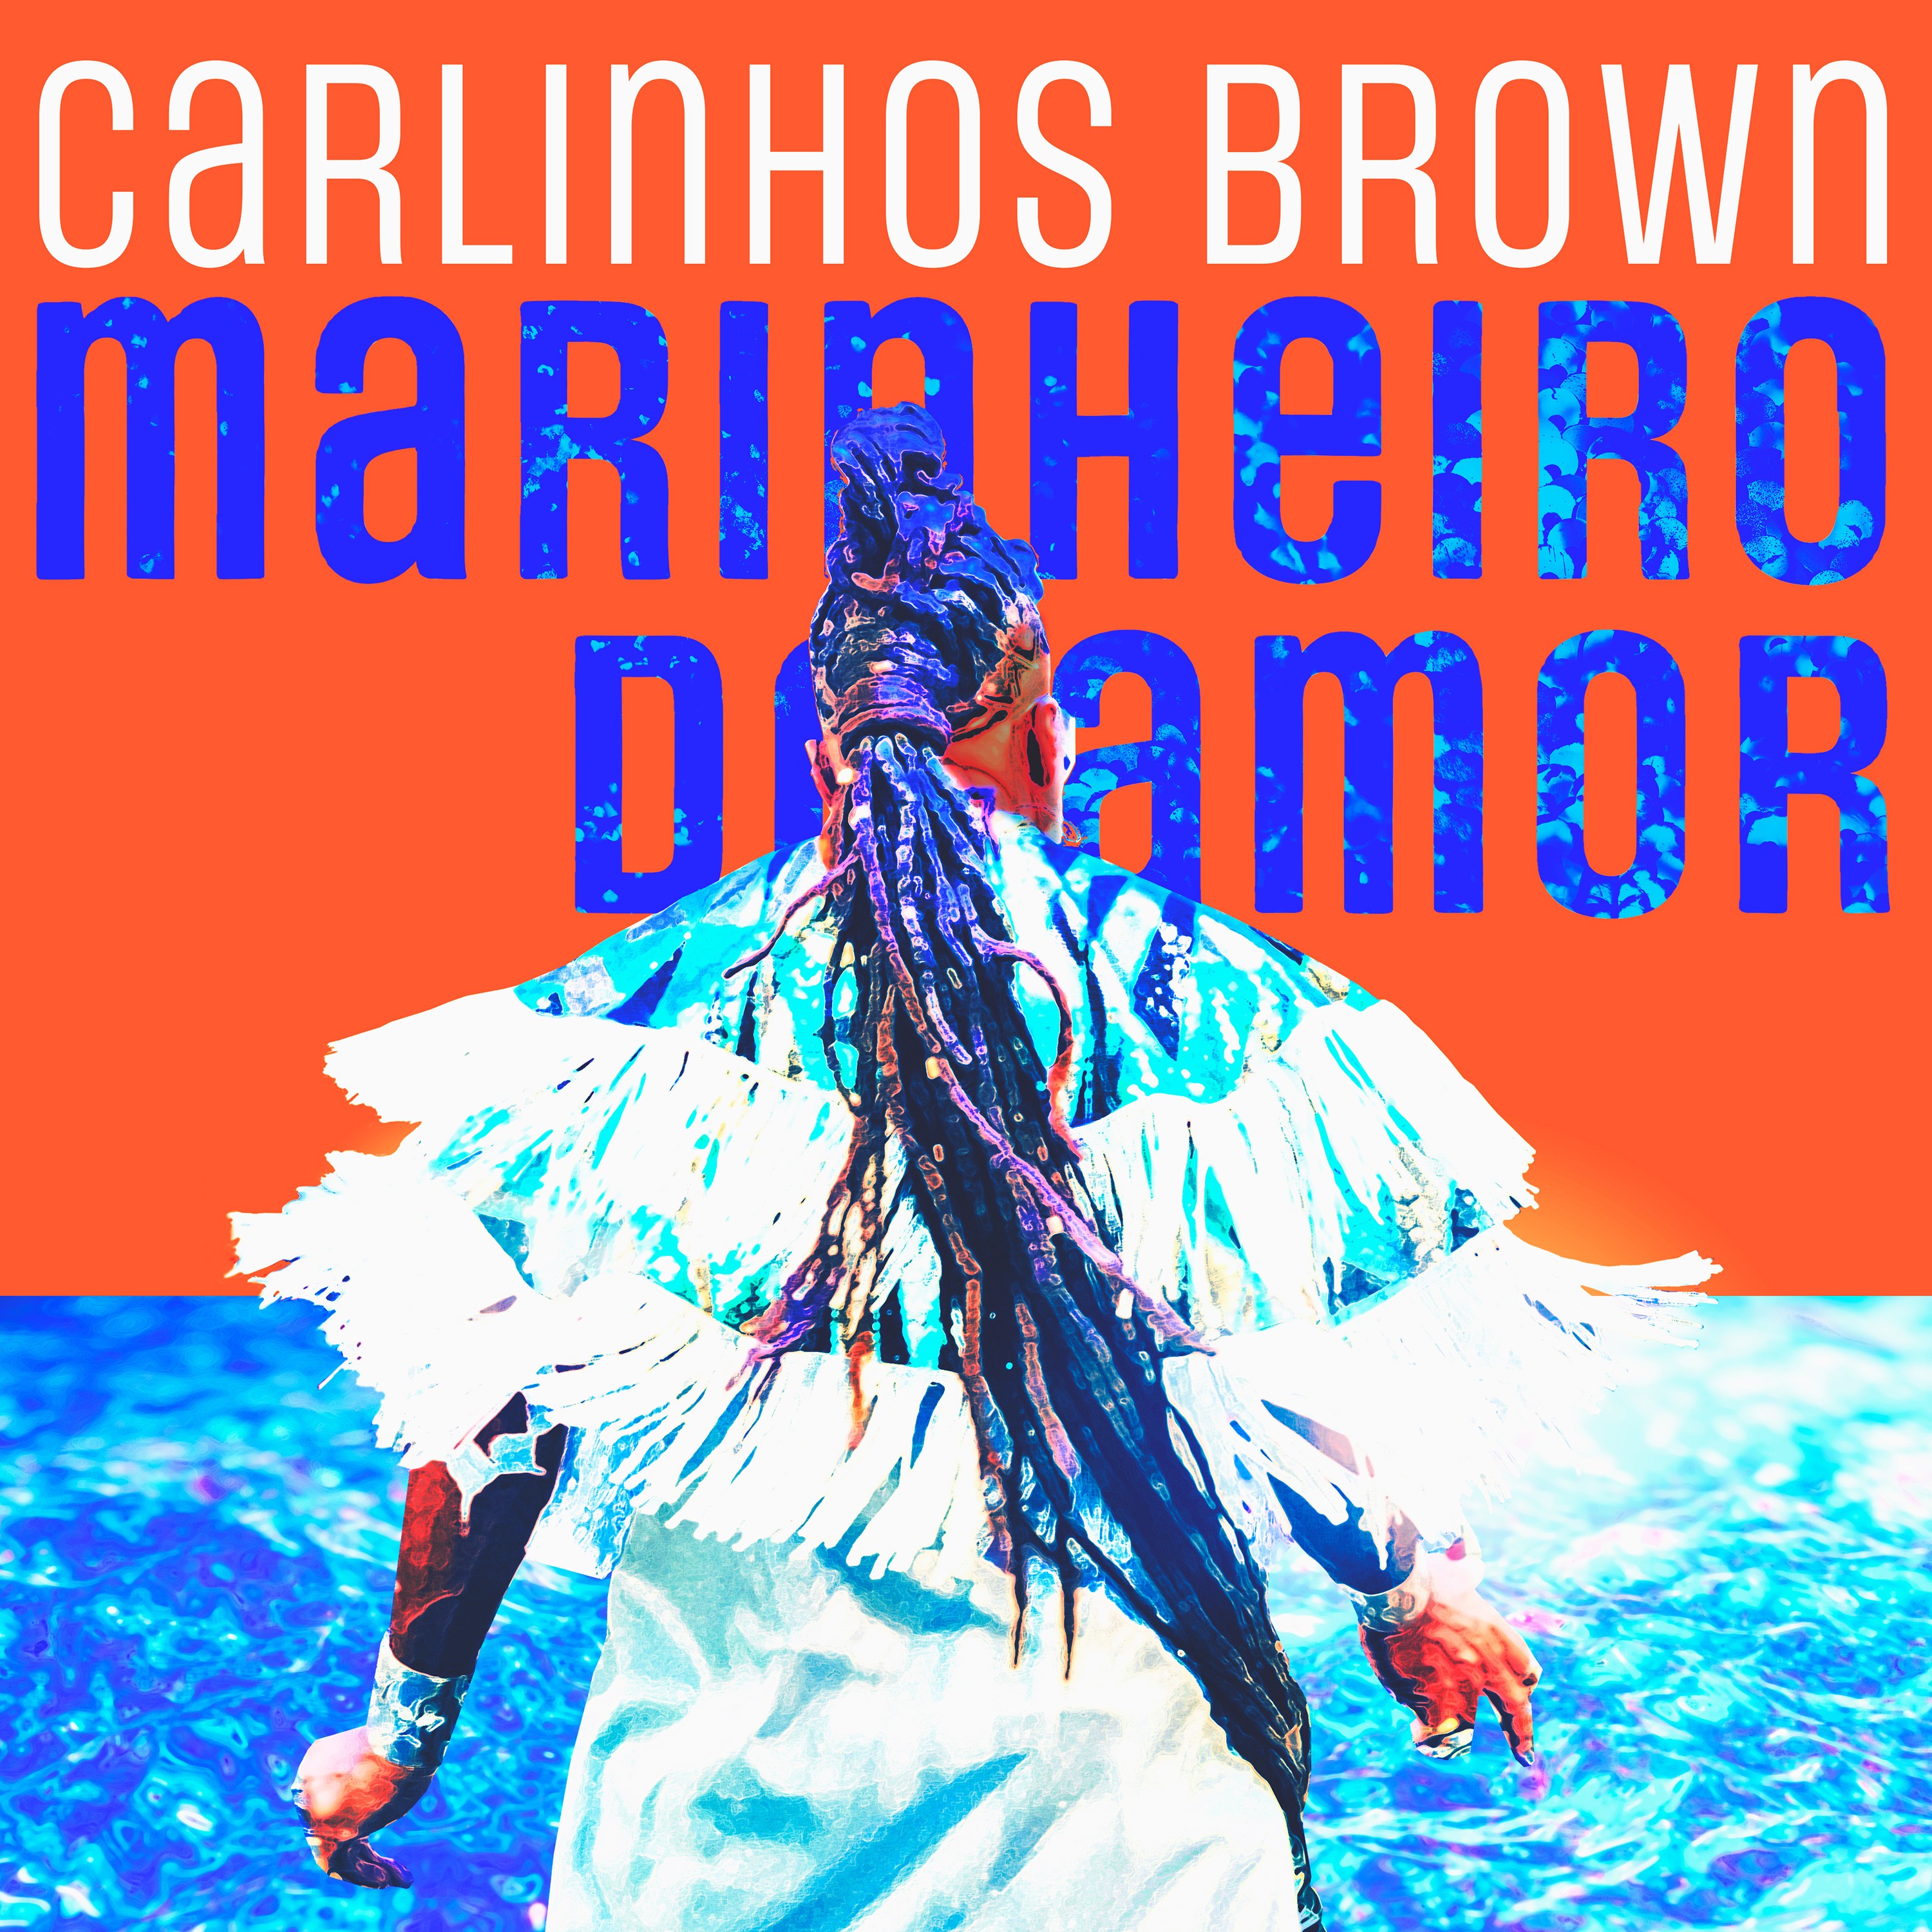 Carlinhos Brown saúda Yemanjá com 'Marinheiro de amor' nas águas do álbum folião 'Pop xirê'